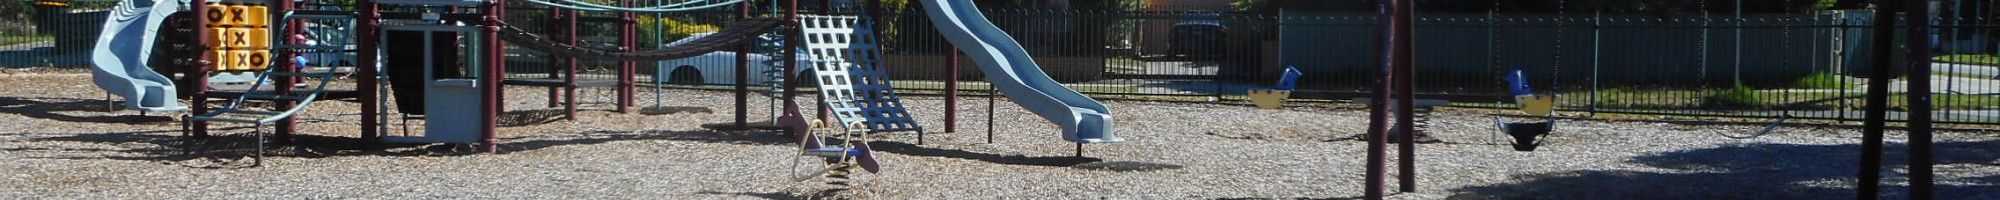 Edinburgh Reserve playground